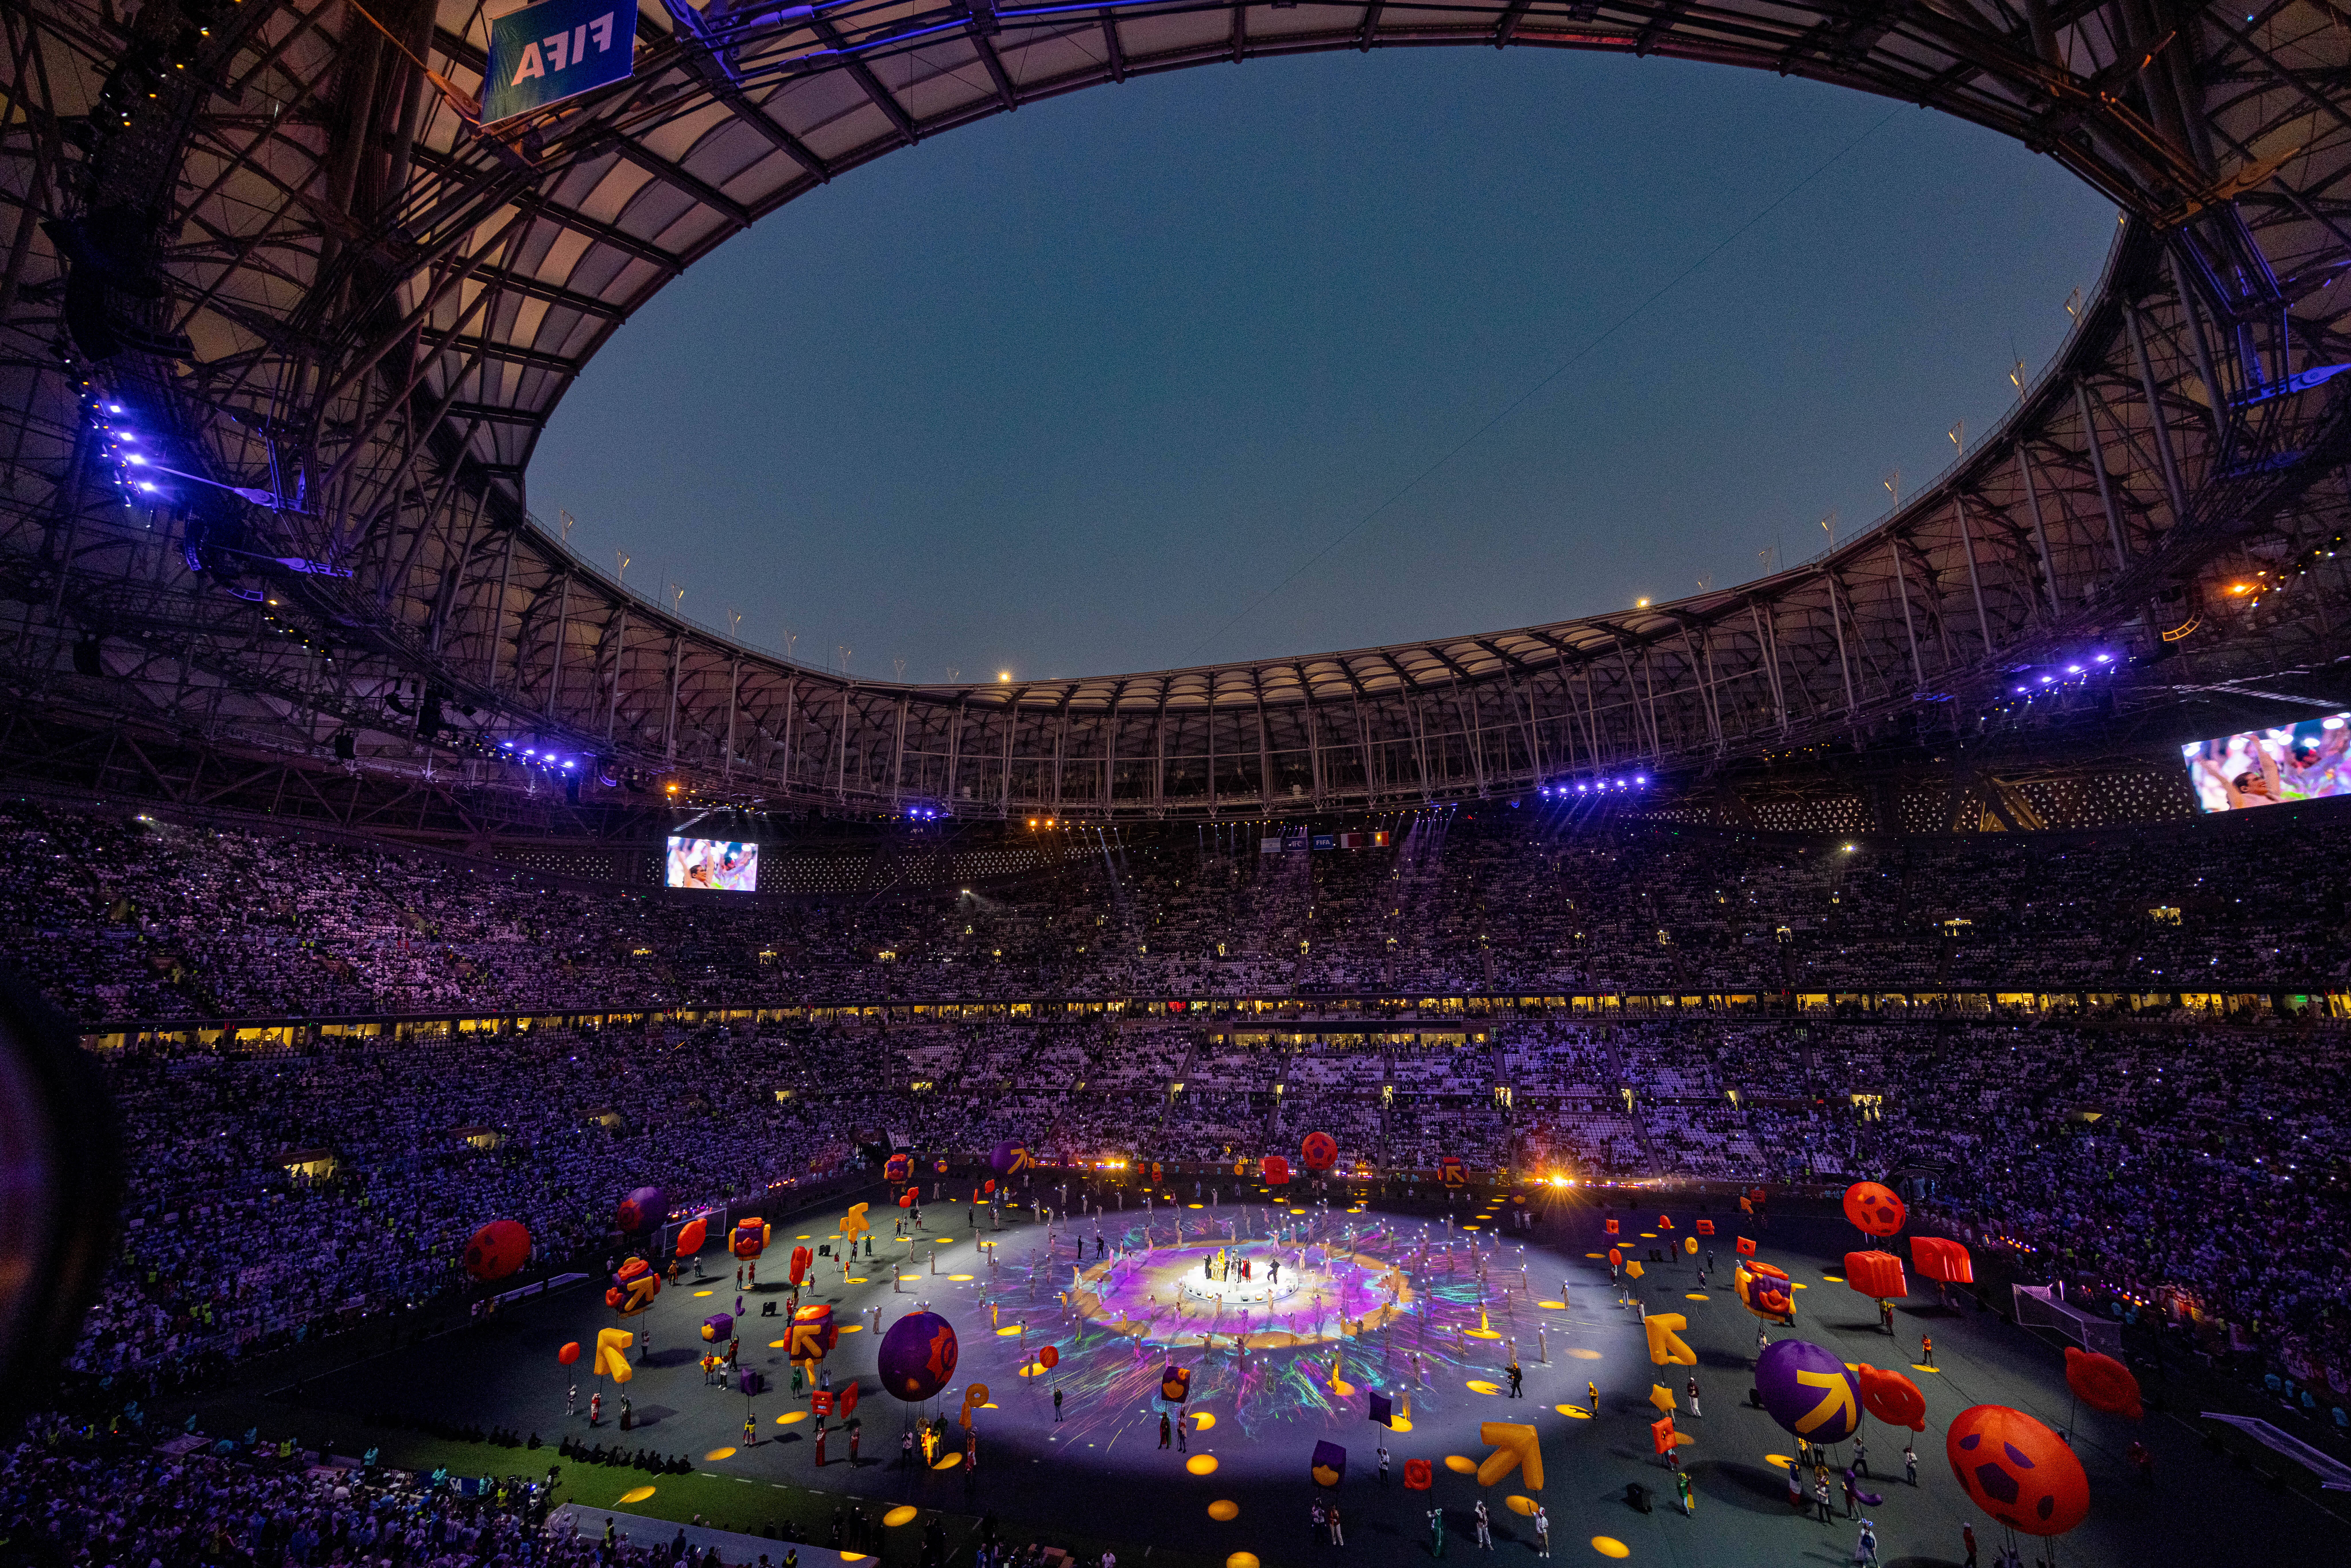 Show total la ceremonia de închidere a Cupei Mondiale de fotbal 2022. Atmosferă de vis pe arena Lusail. GALERIE FOTO - Imaginea 3